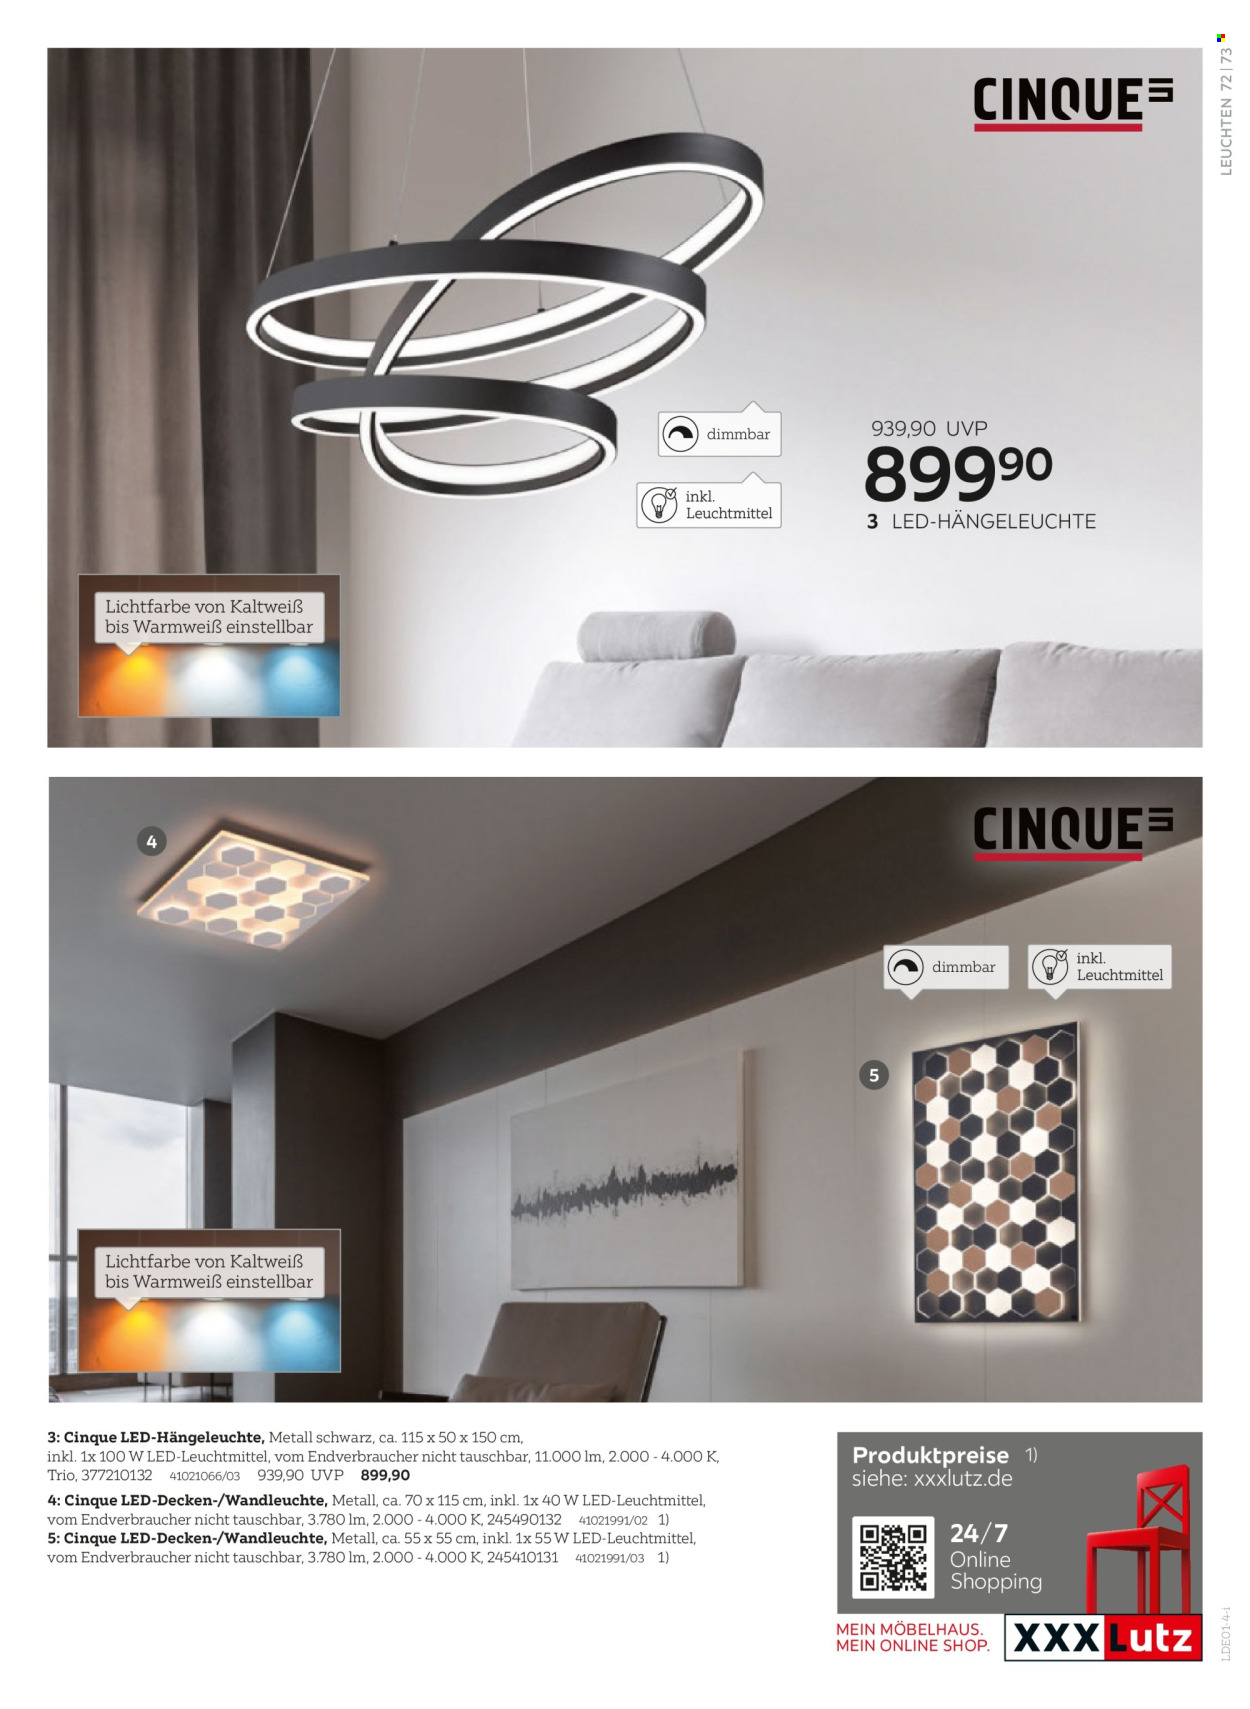 thumbnail - Prospekte XXXLutz - Produkte in Aktion - LED-Glühbirnen, LED-Hängeleuchte, Hängeleuchte, Wandleuchte. Seite 73.